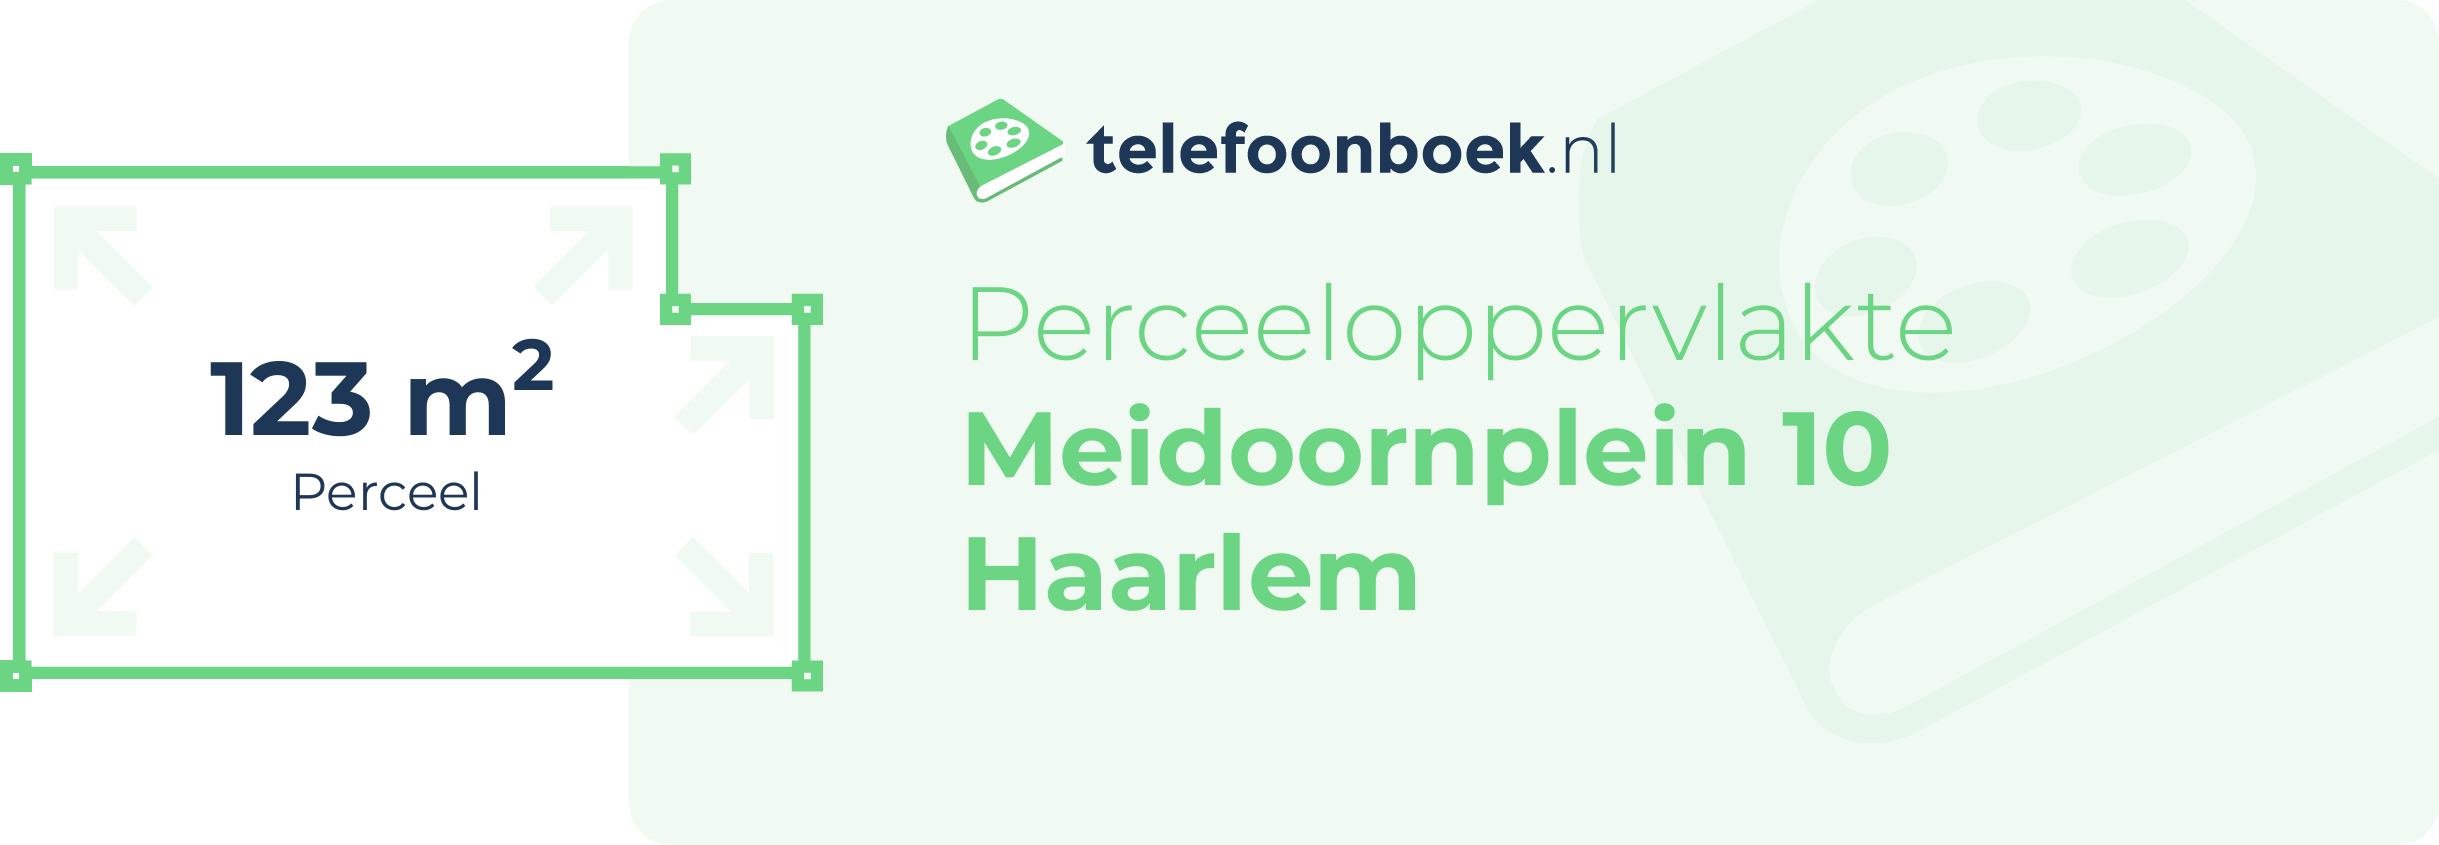 Perceeloppervlakte Meidoornplein 10 Haarlem